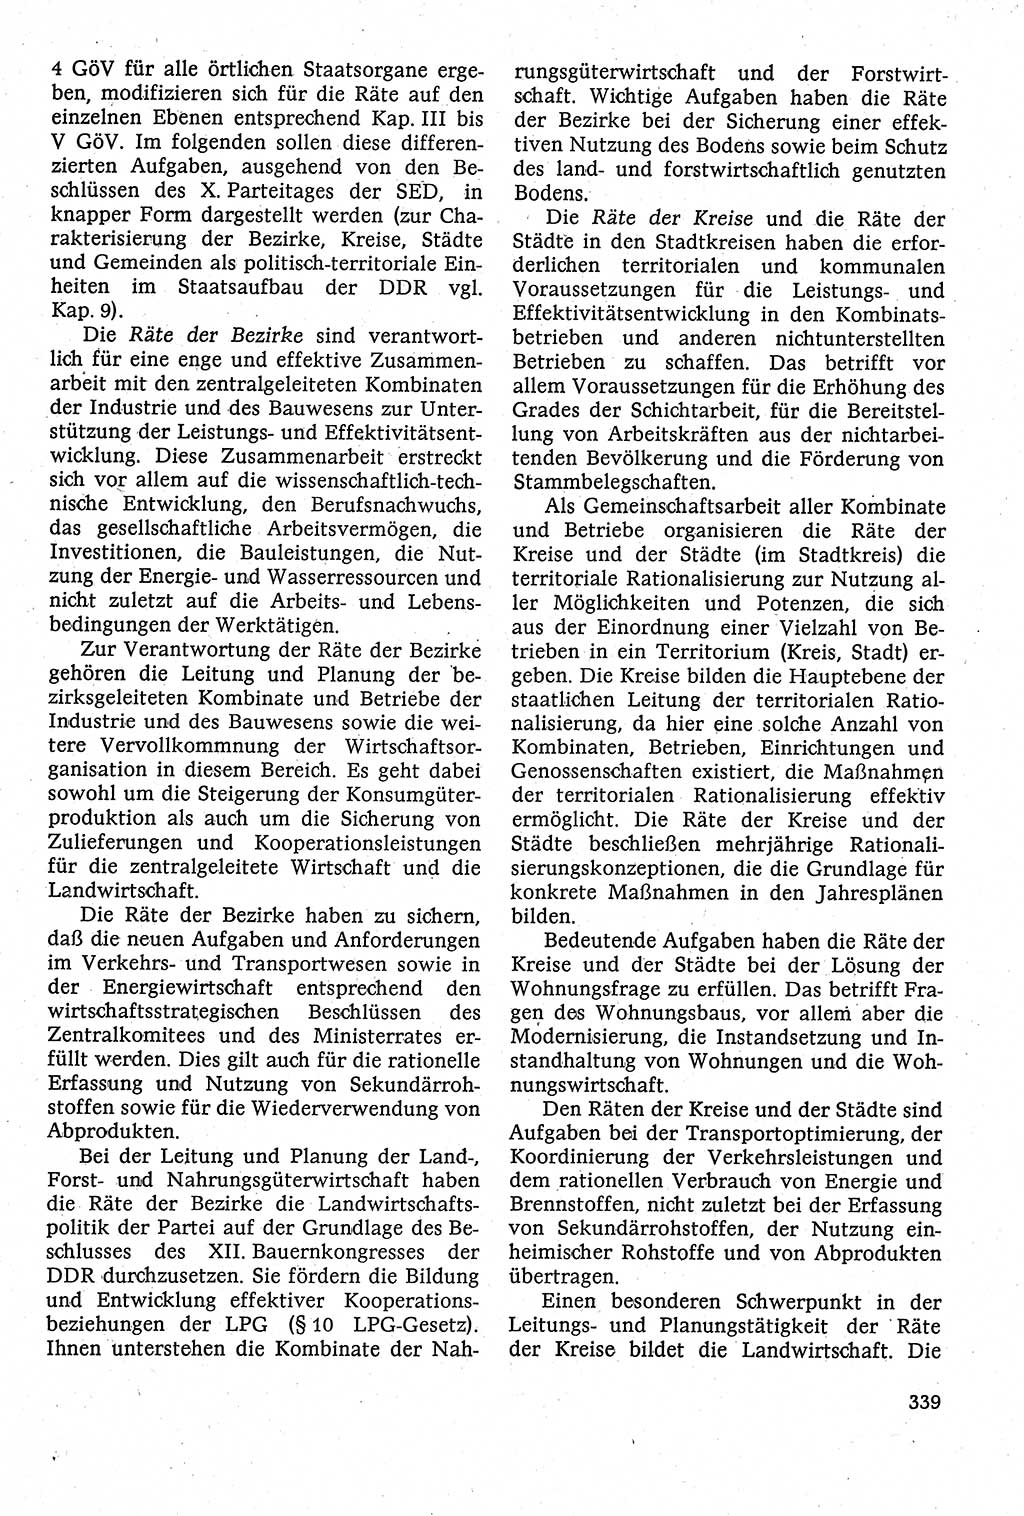 Staatsrecht der DDR [Deutsche Demokratische Republik (DDR)], Lehrbuch 1984, Seite 339 (St.-R. DDR Lb. 1984, S. 339)